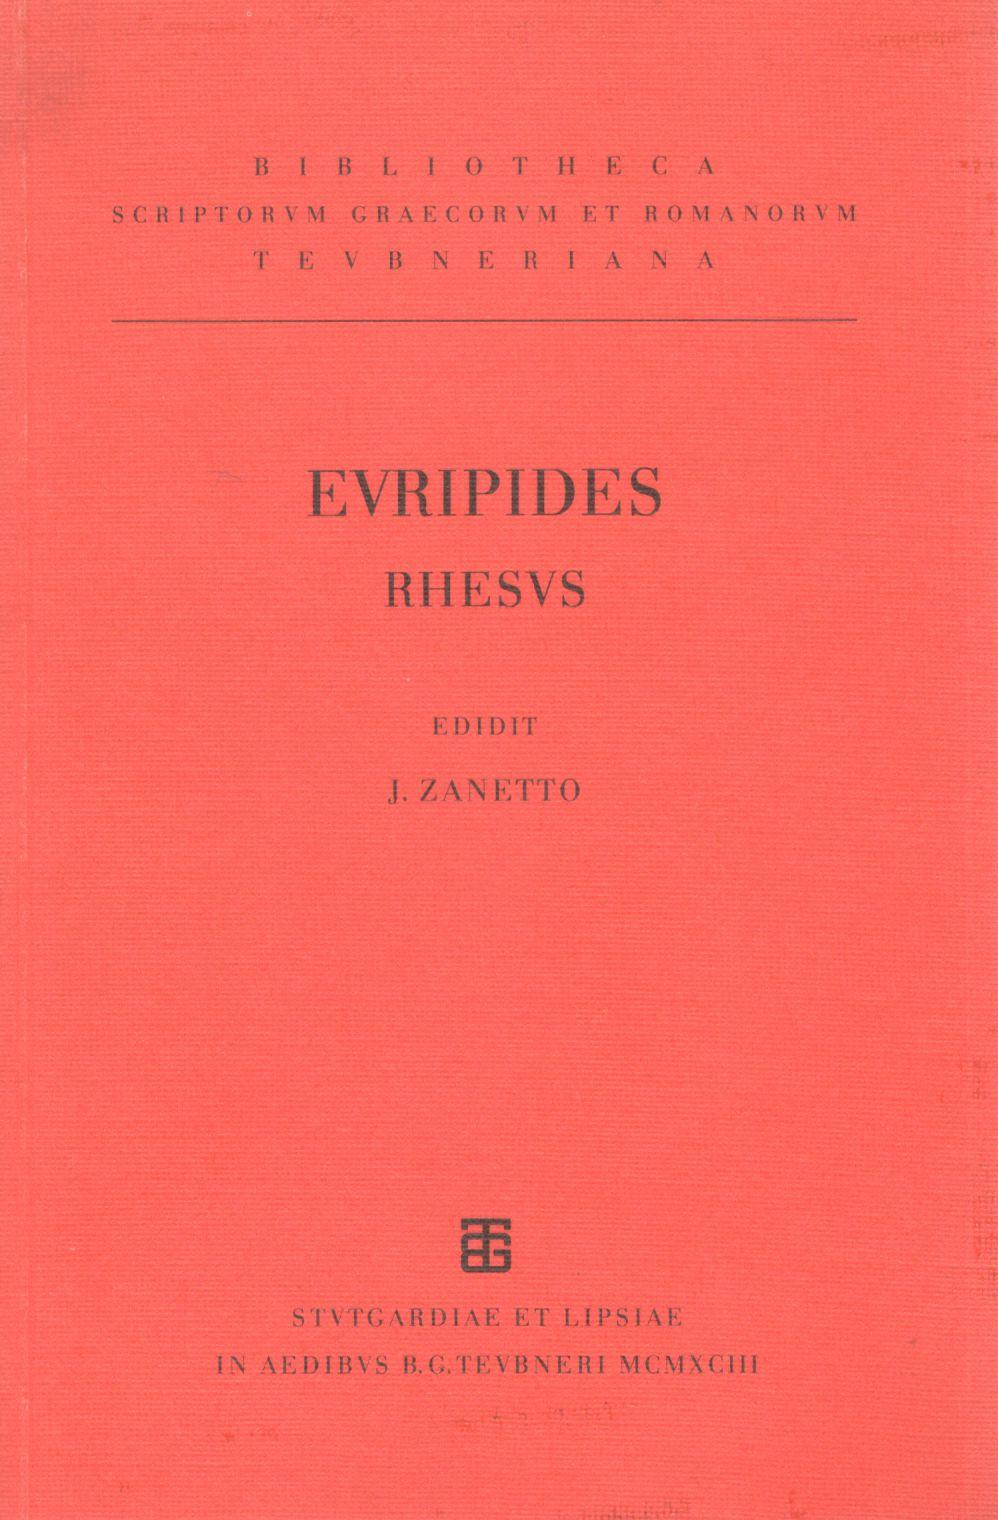 EURIPIDIS RHESUS